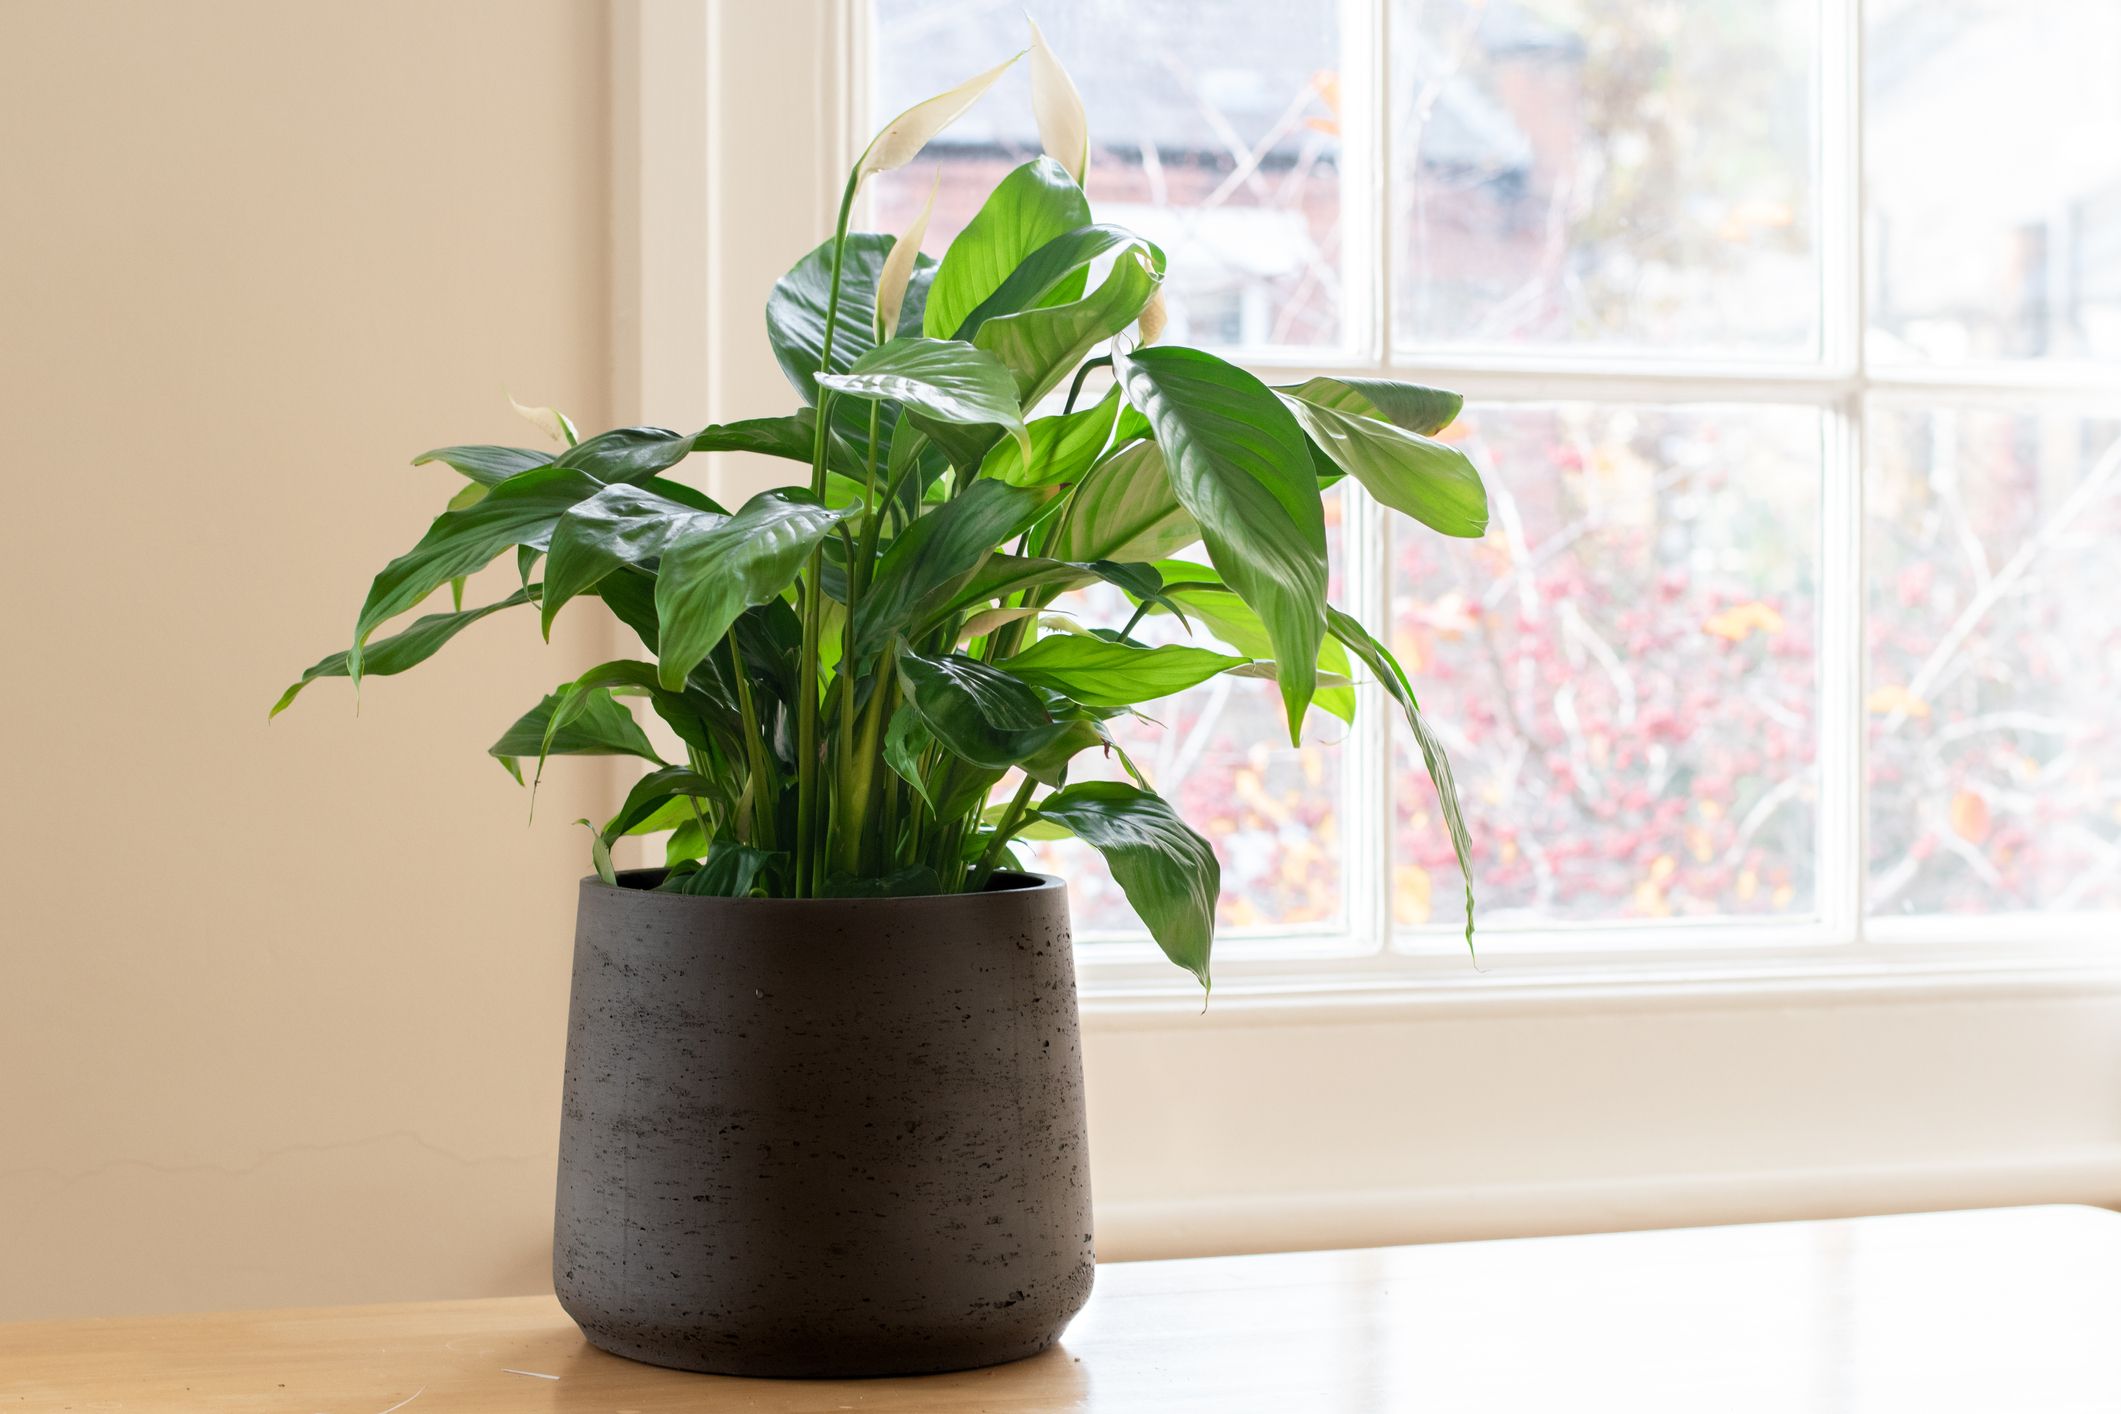 15 Best Living Room Plants - Living Room Indoor Plants To Buy Now